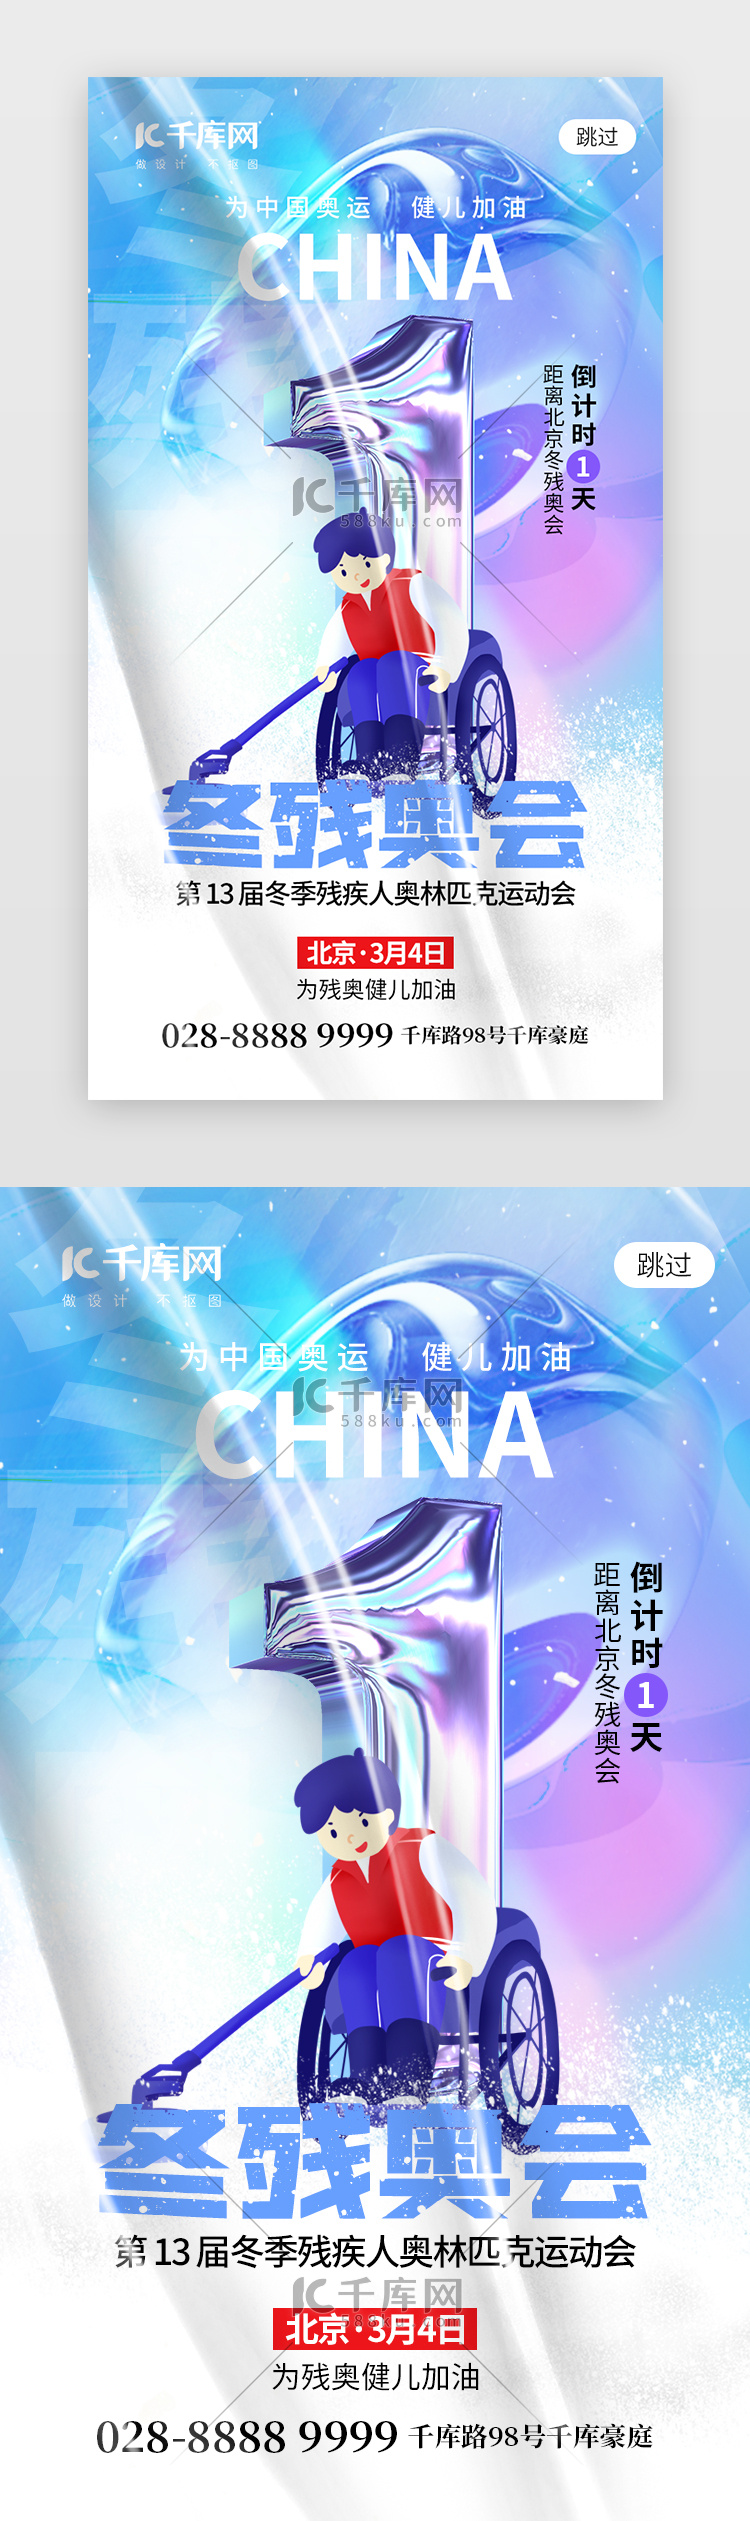 北京冬残奥会倒计时app闪屏创意蓝紫色运动员